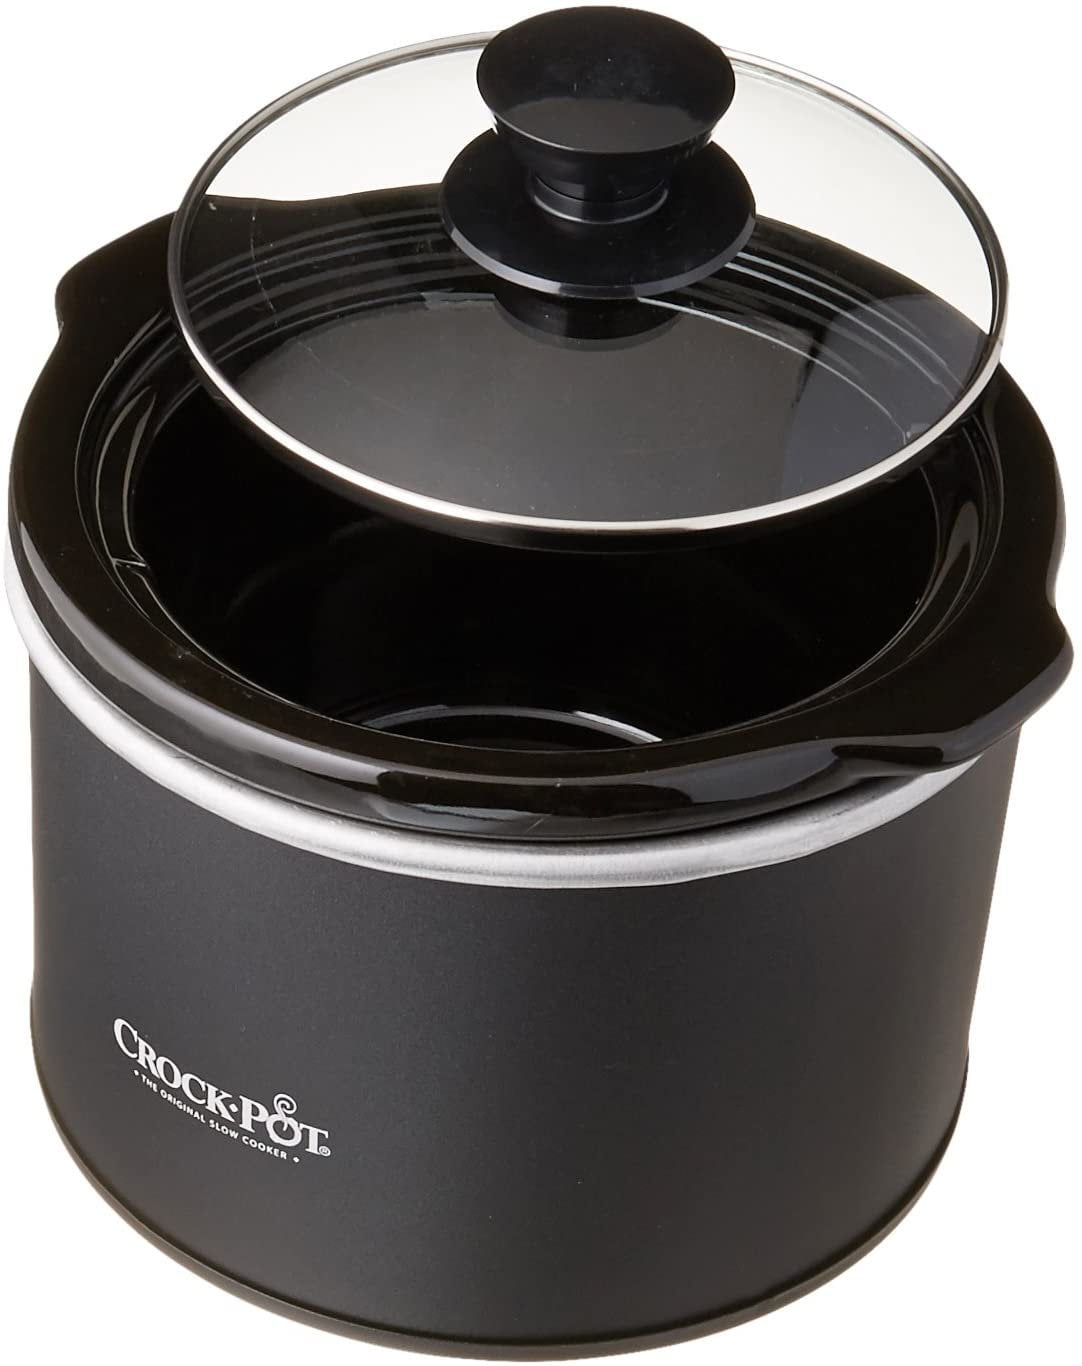 Crock-Pot® Classic Slow Cooker - Black, 1.5 qt - Gerbes Super Markets